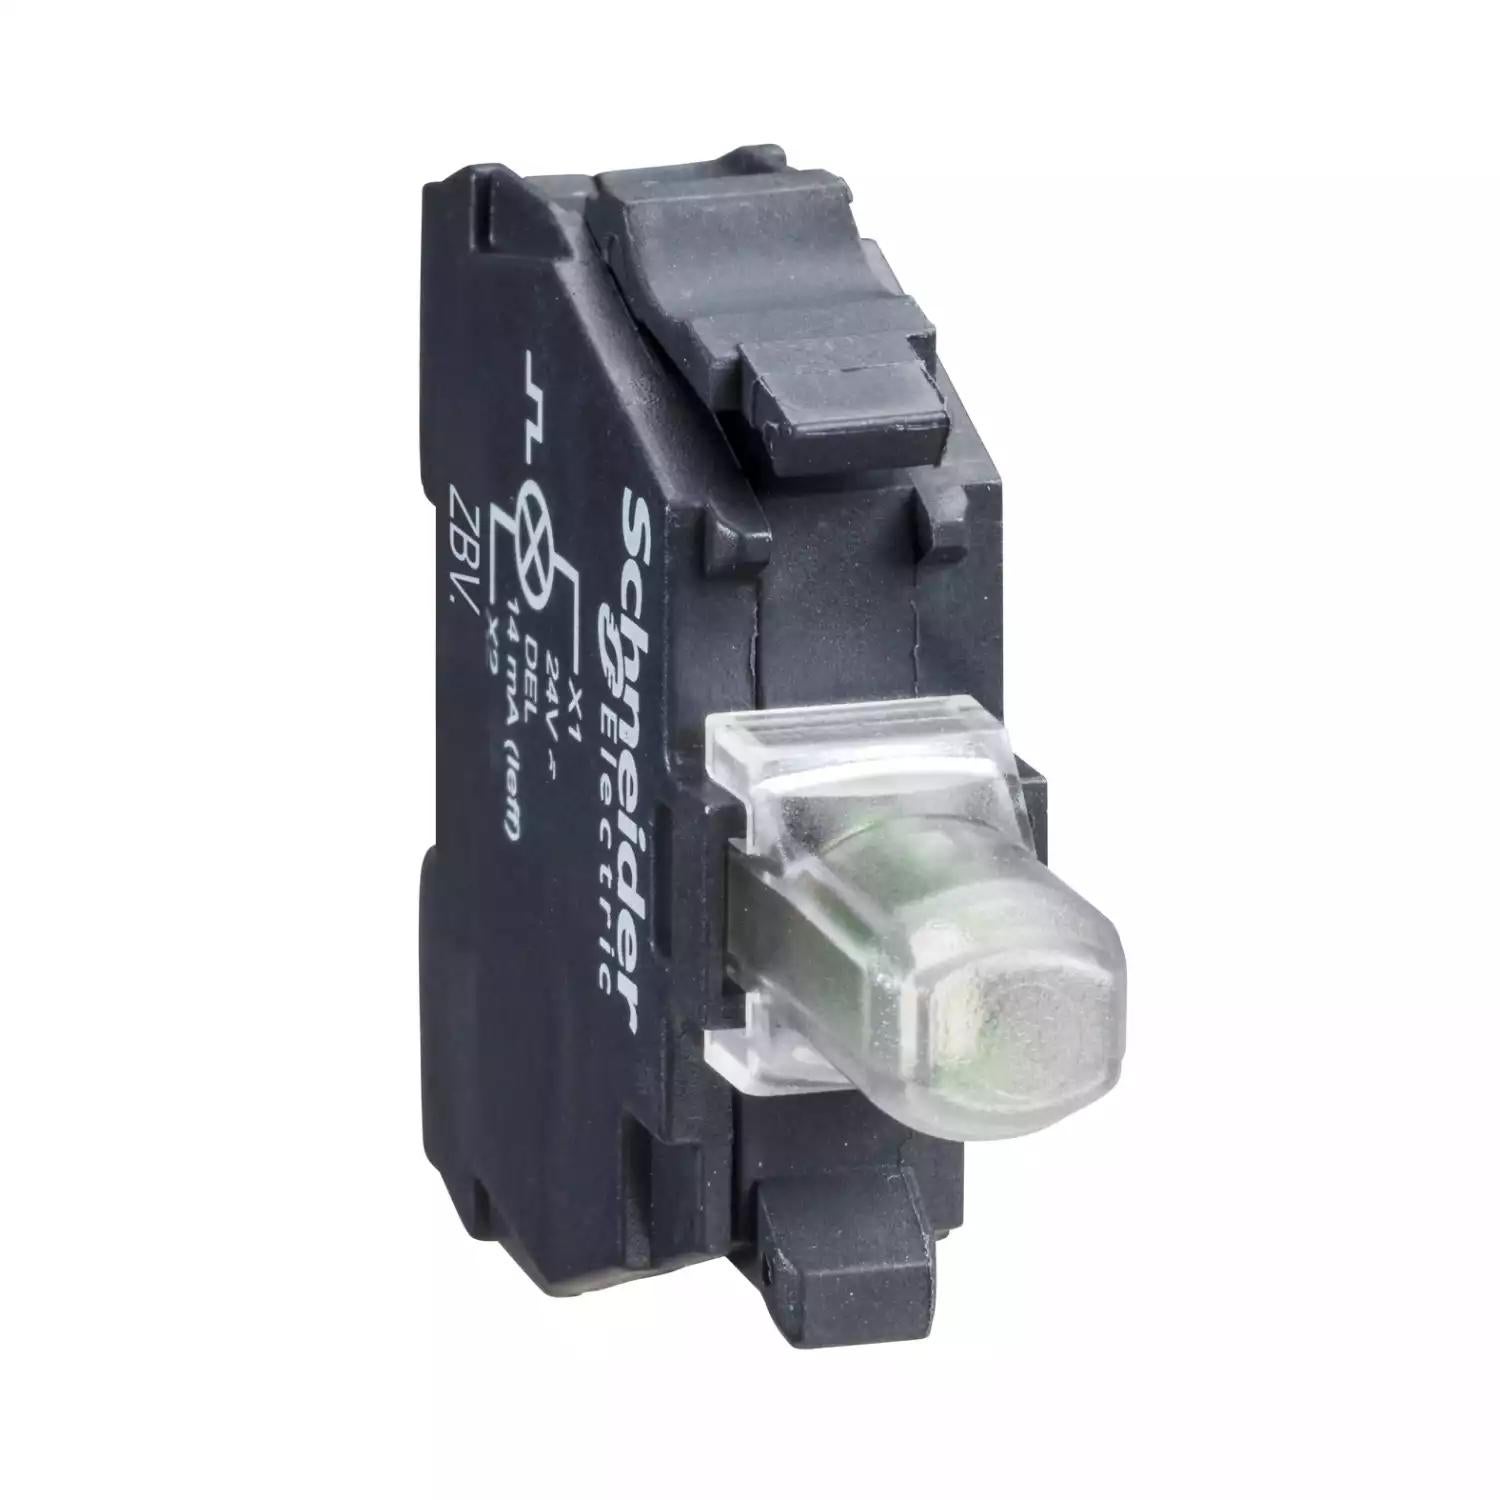 Light block for head Ø22 mm, Harmony XB4, XB5, green, integral LED, 24 V AC/DC